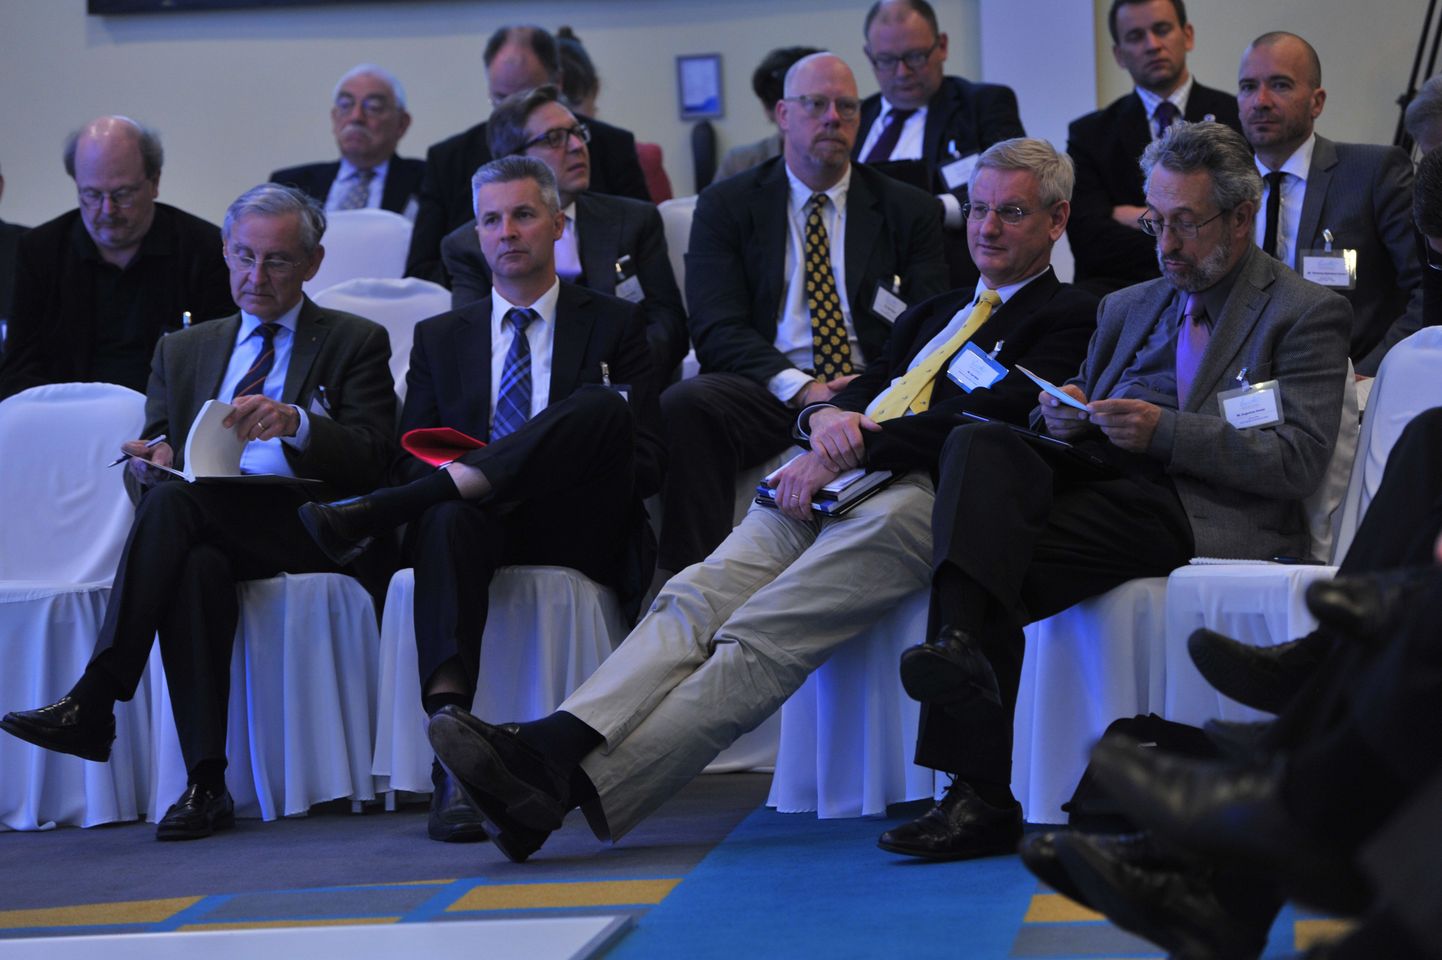 Möödunud aastal toimunud Lennart Meri konverentsi publik, arutelu kuulab ka kollast lipsu kandev Carl Bildt.